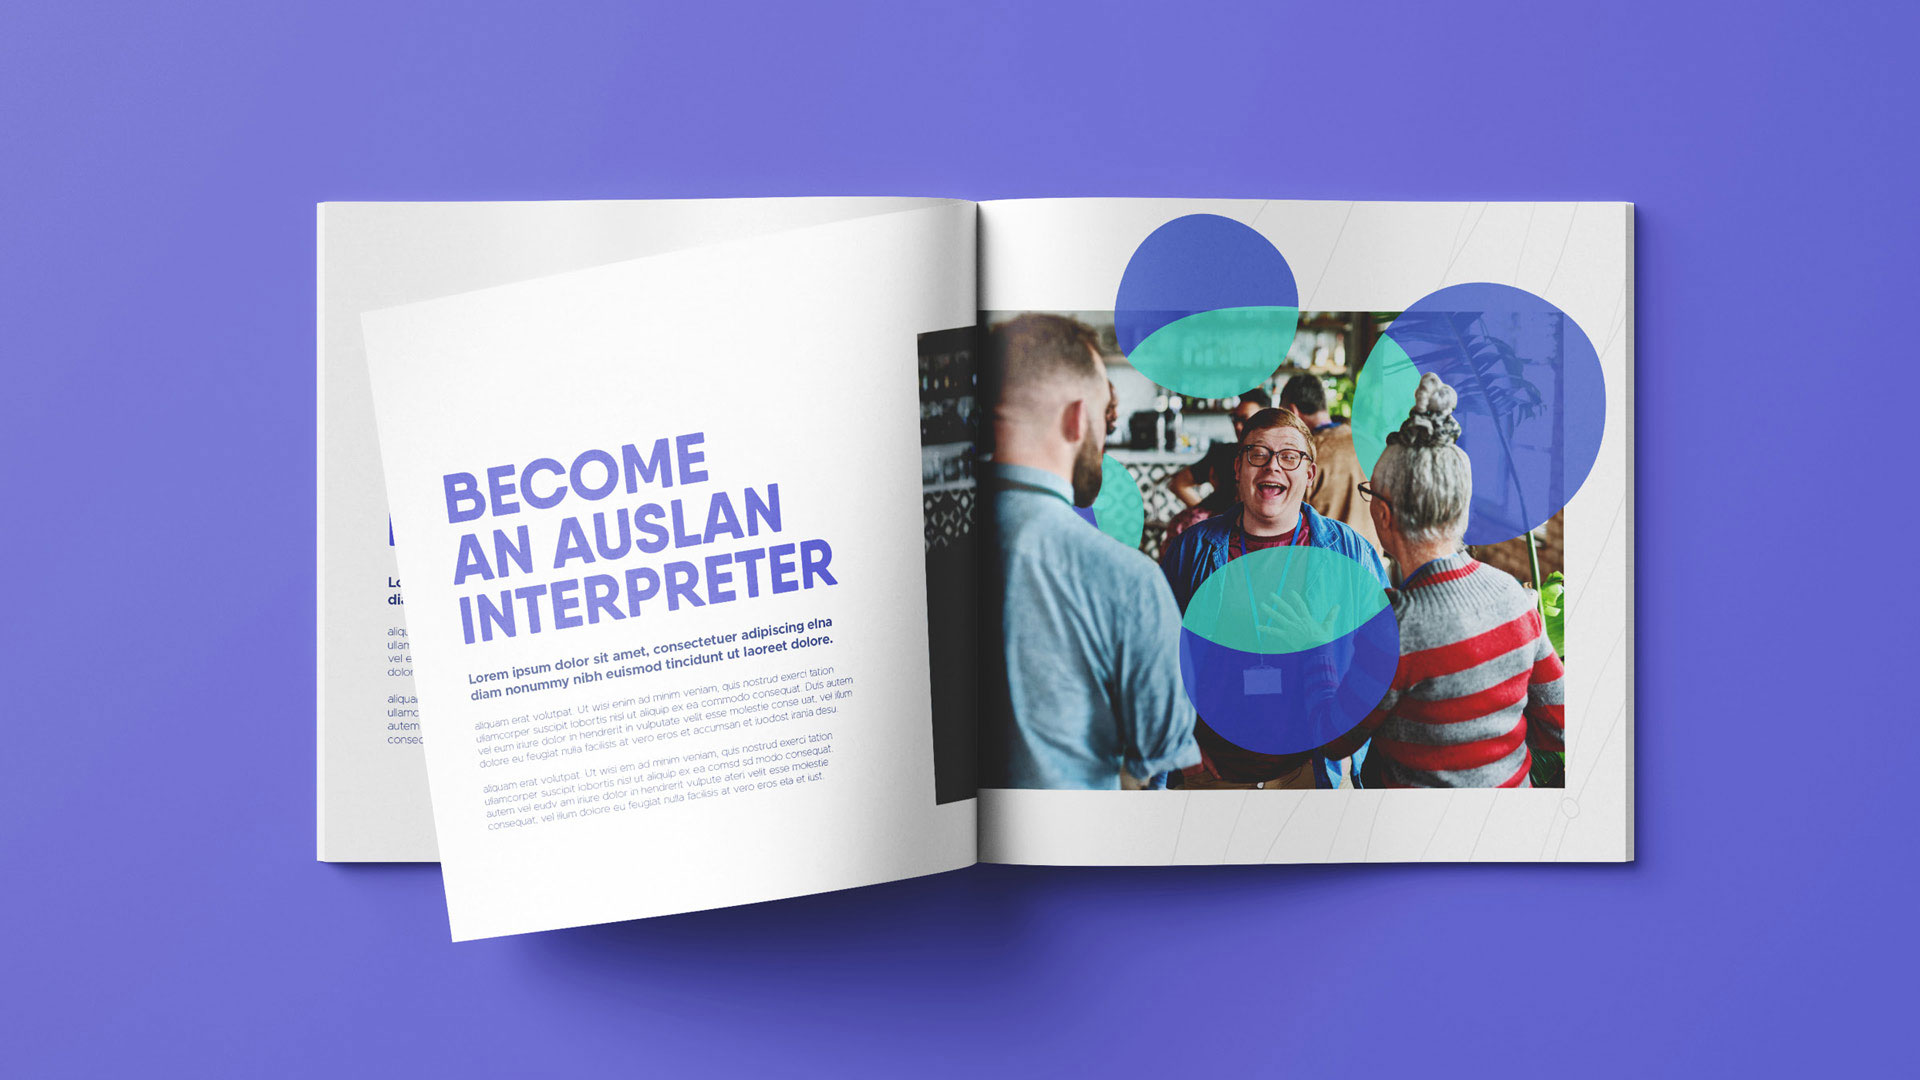 Book describing how to become an Auslan interpreter